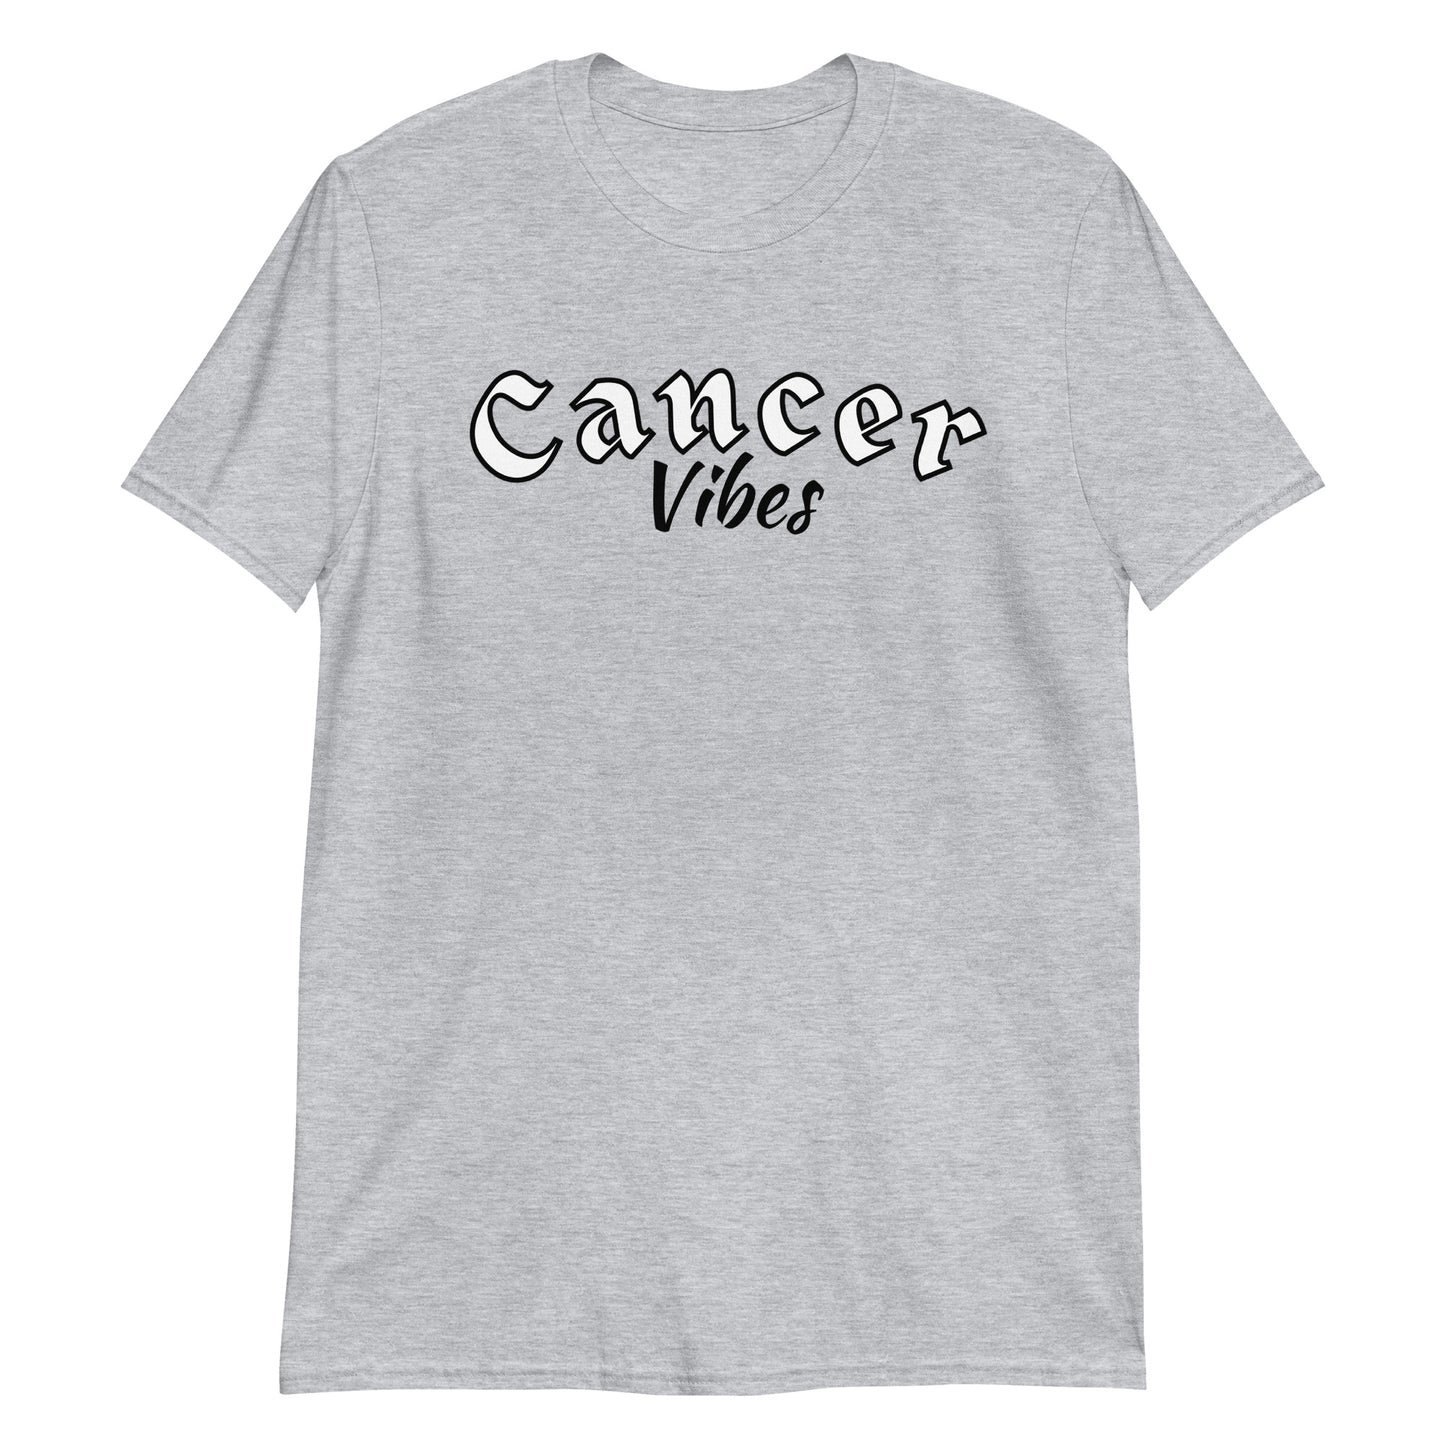 Cancer Short-Sleeve Unisex T-Shirt